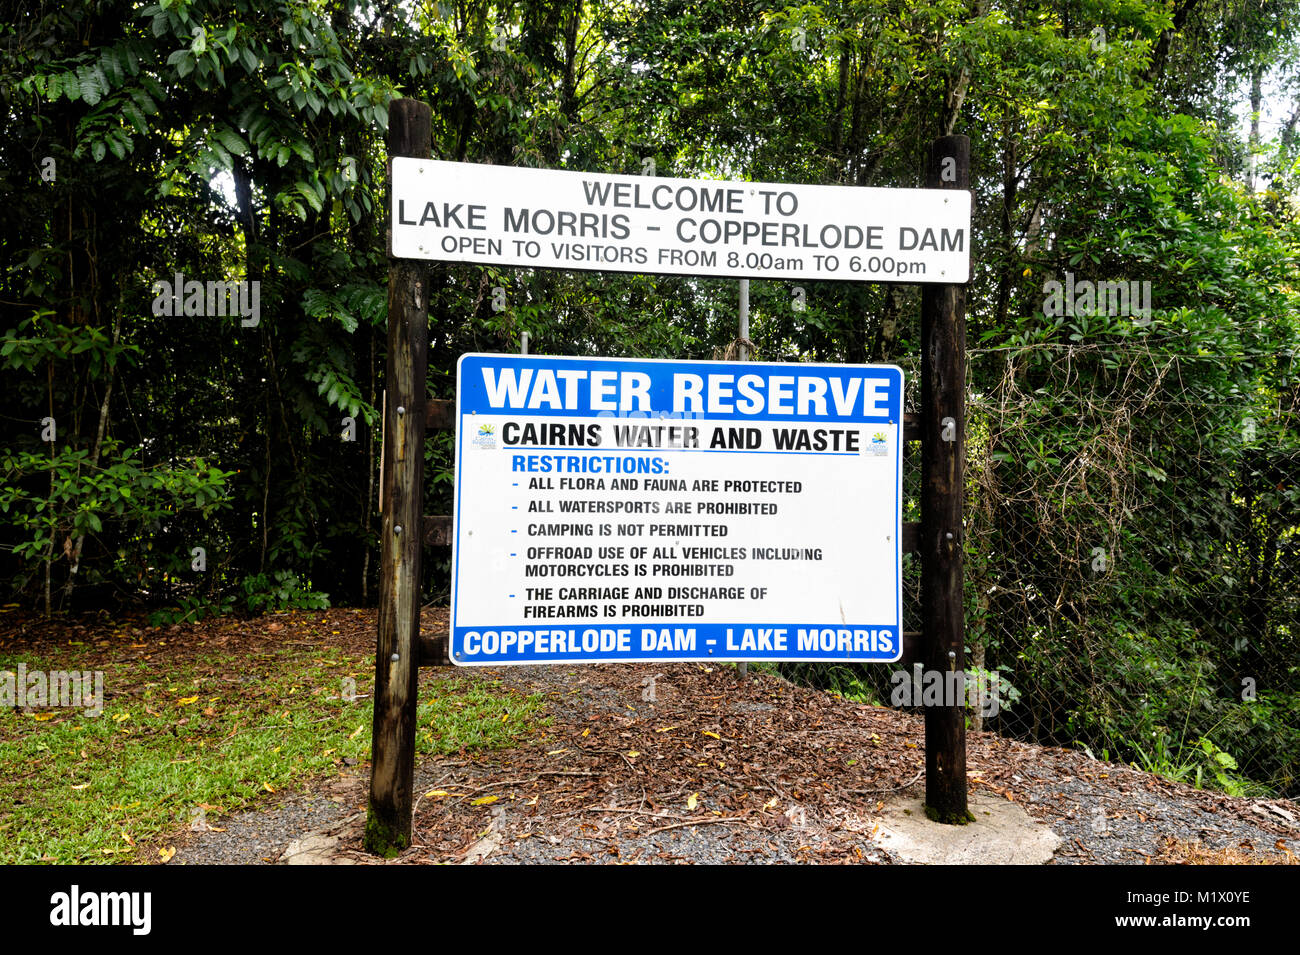 Bienvenue à Copperlode Dam Lake Morris Signe, Cairns, Far North Queensland, Queensland, Australie, FNQ Banque D'Images